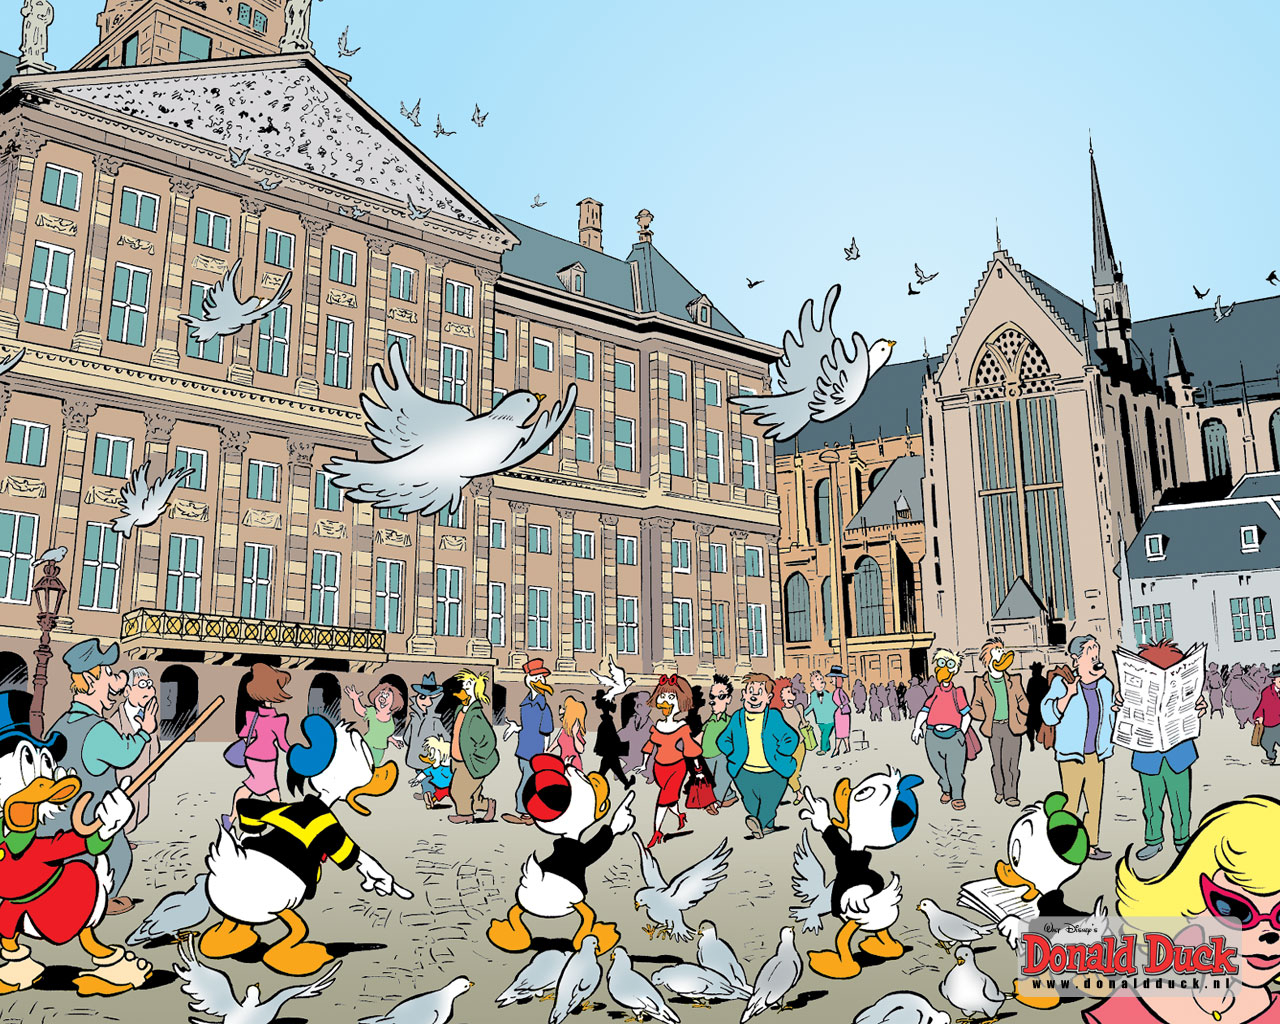 Donald duck et ses amis